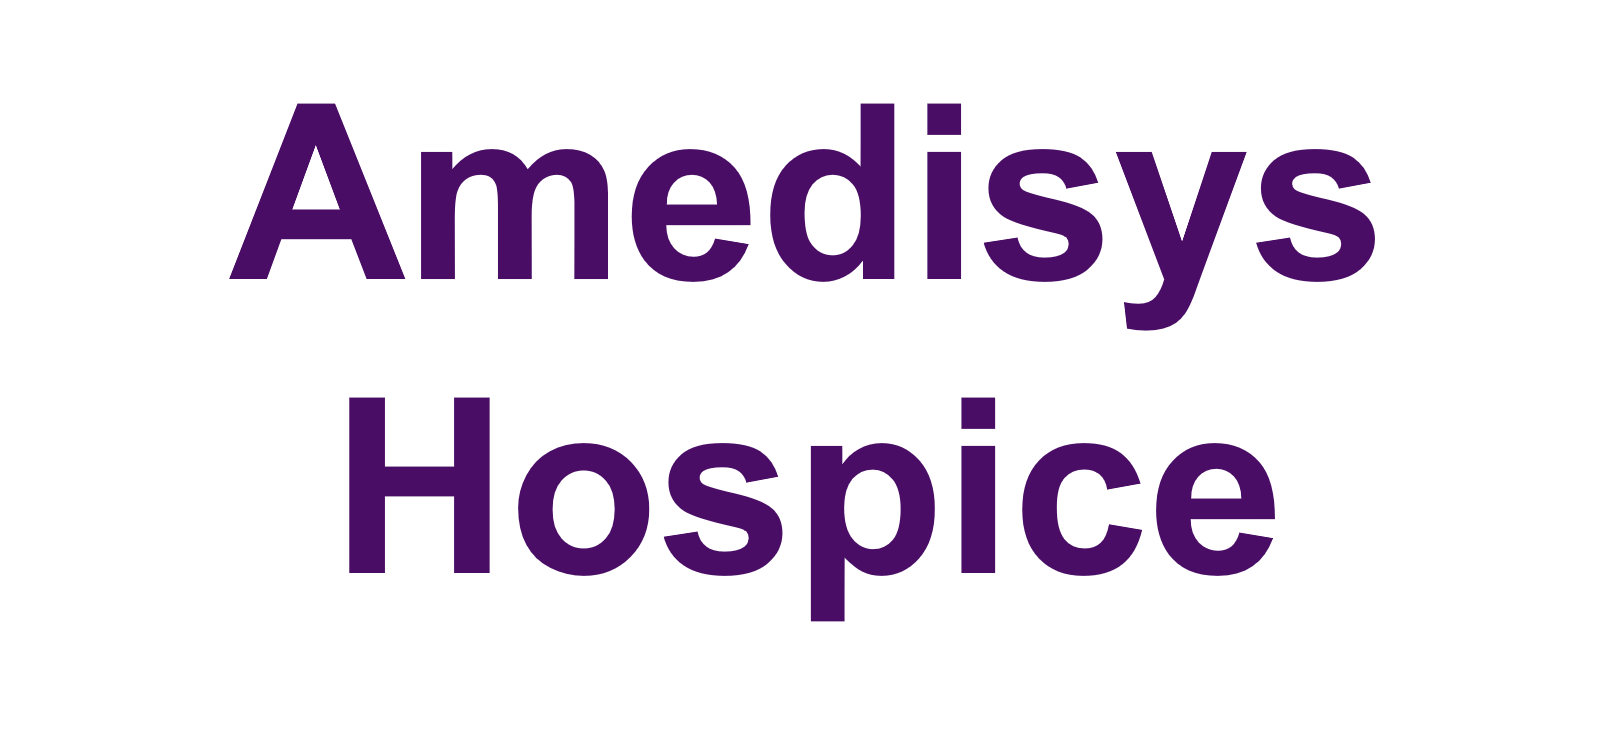 6b. Amedisys Hospice (Friend)